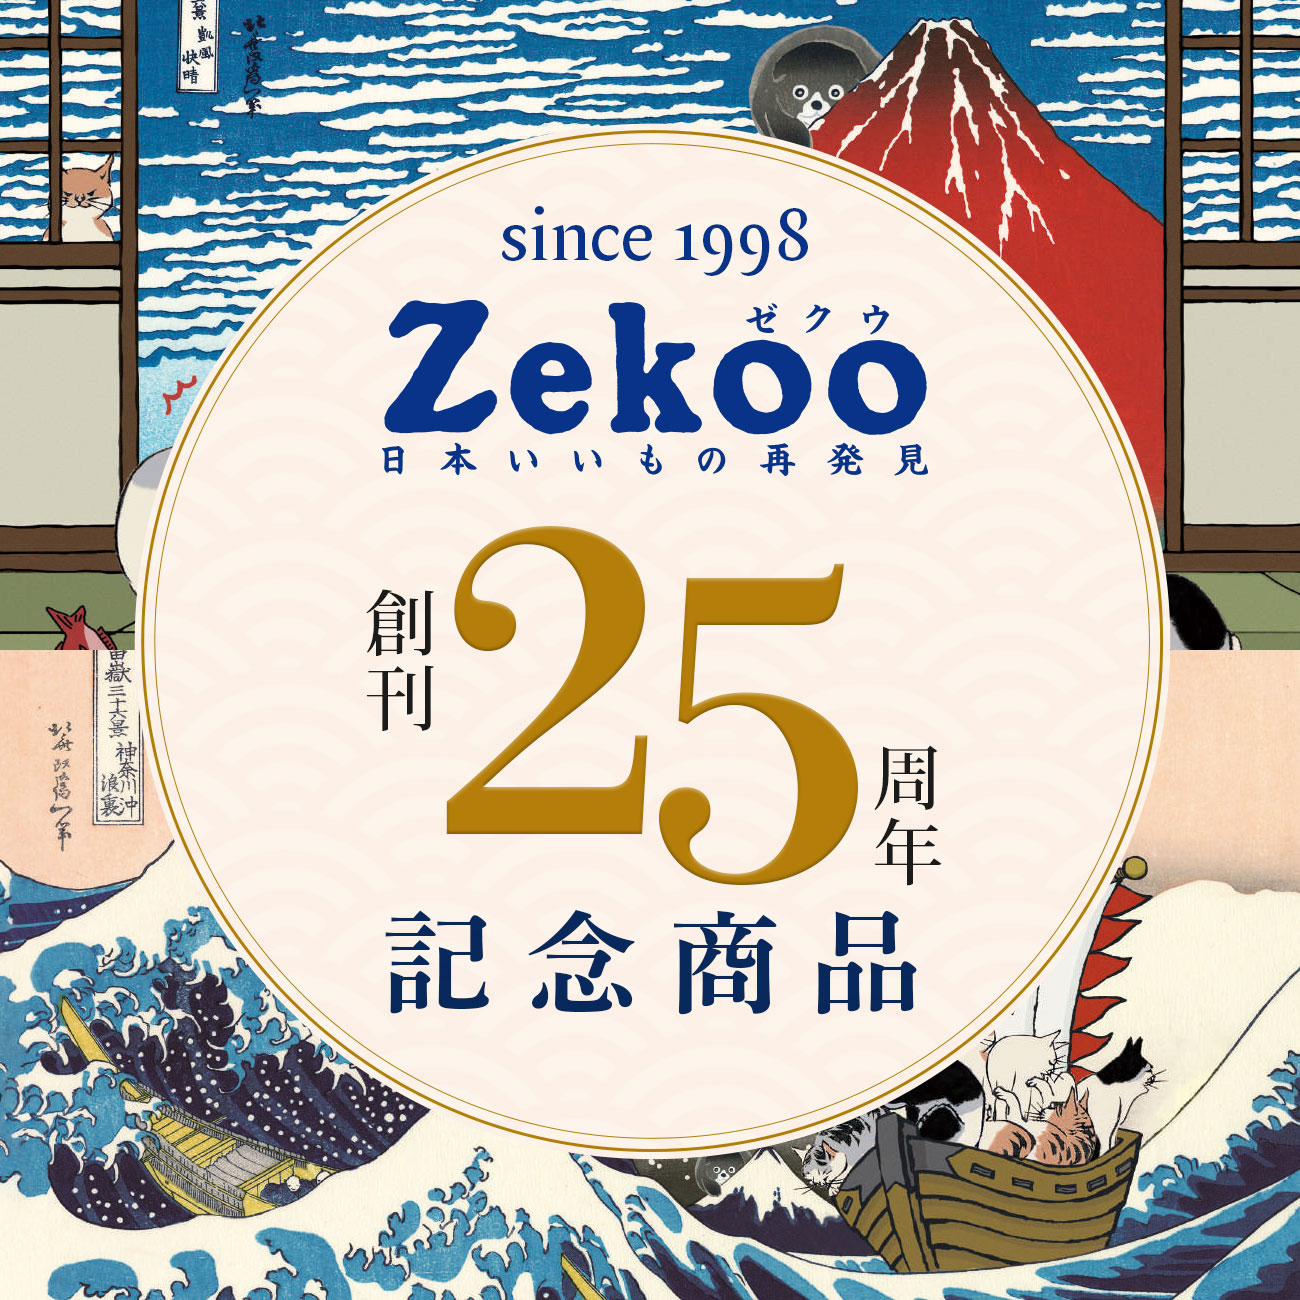 【特集】Zekoo創刊25周年記念商品 